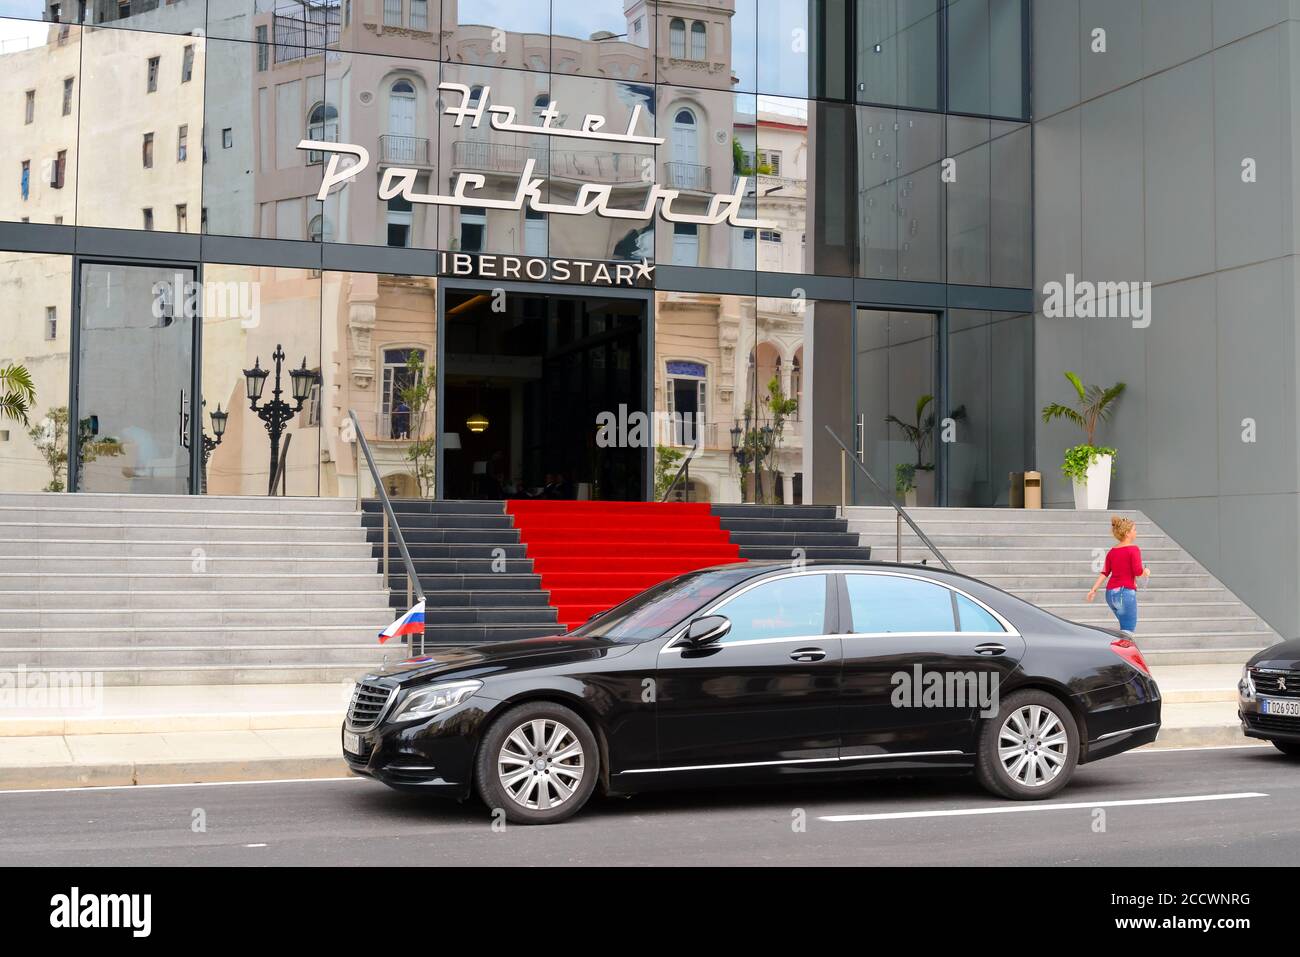 Russland offiziellen Besuch Auto mit Valentina Matwijenko in Havanna, Kuba in der Stadt 500. Jahrestag. Offizieller russischer Besuch. Iberostar Packard Hotel. Stockfoto